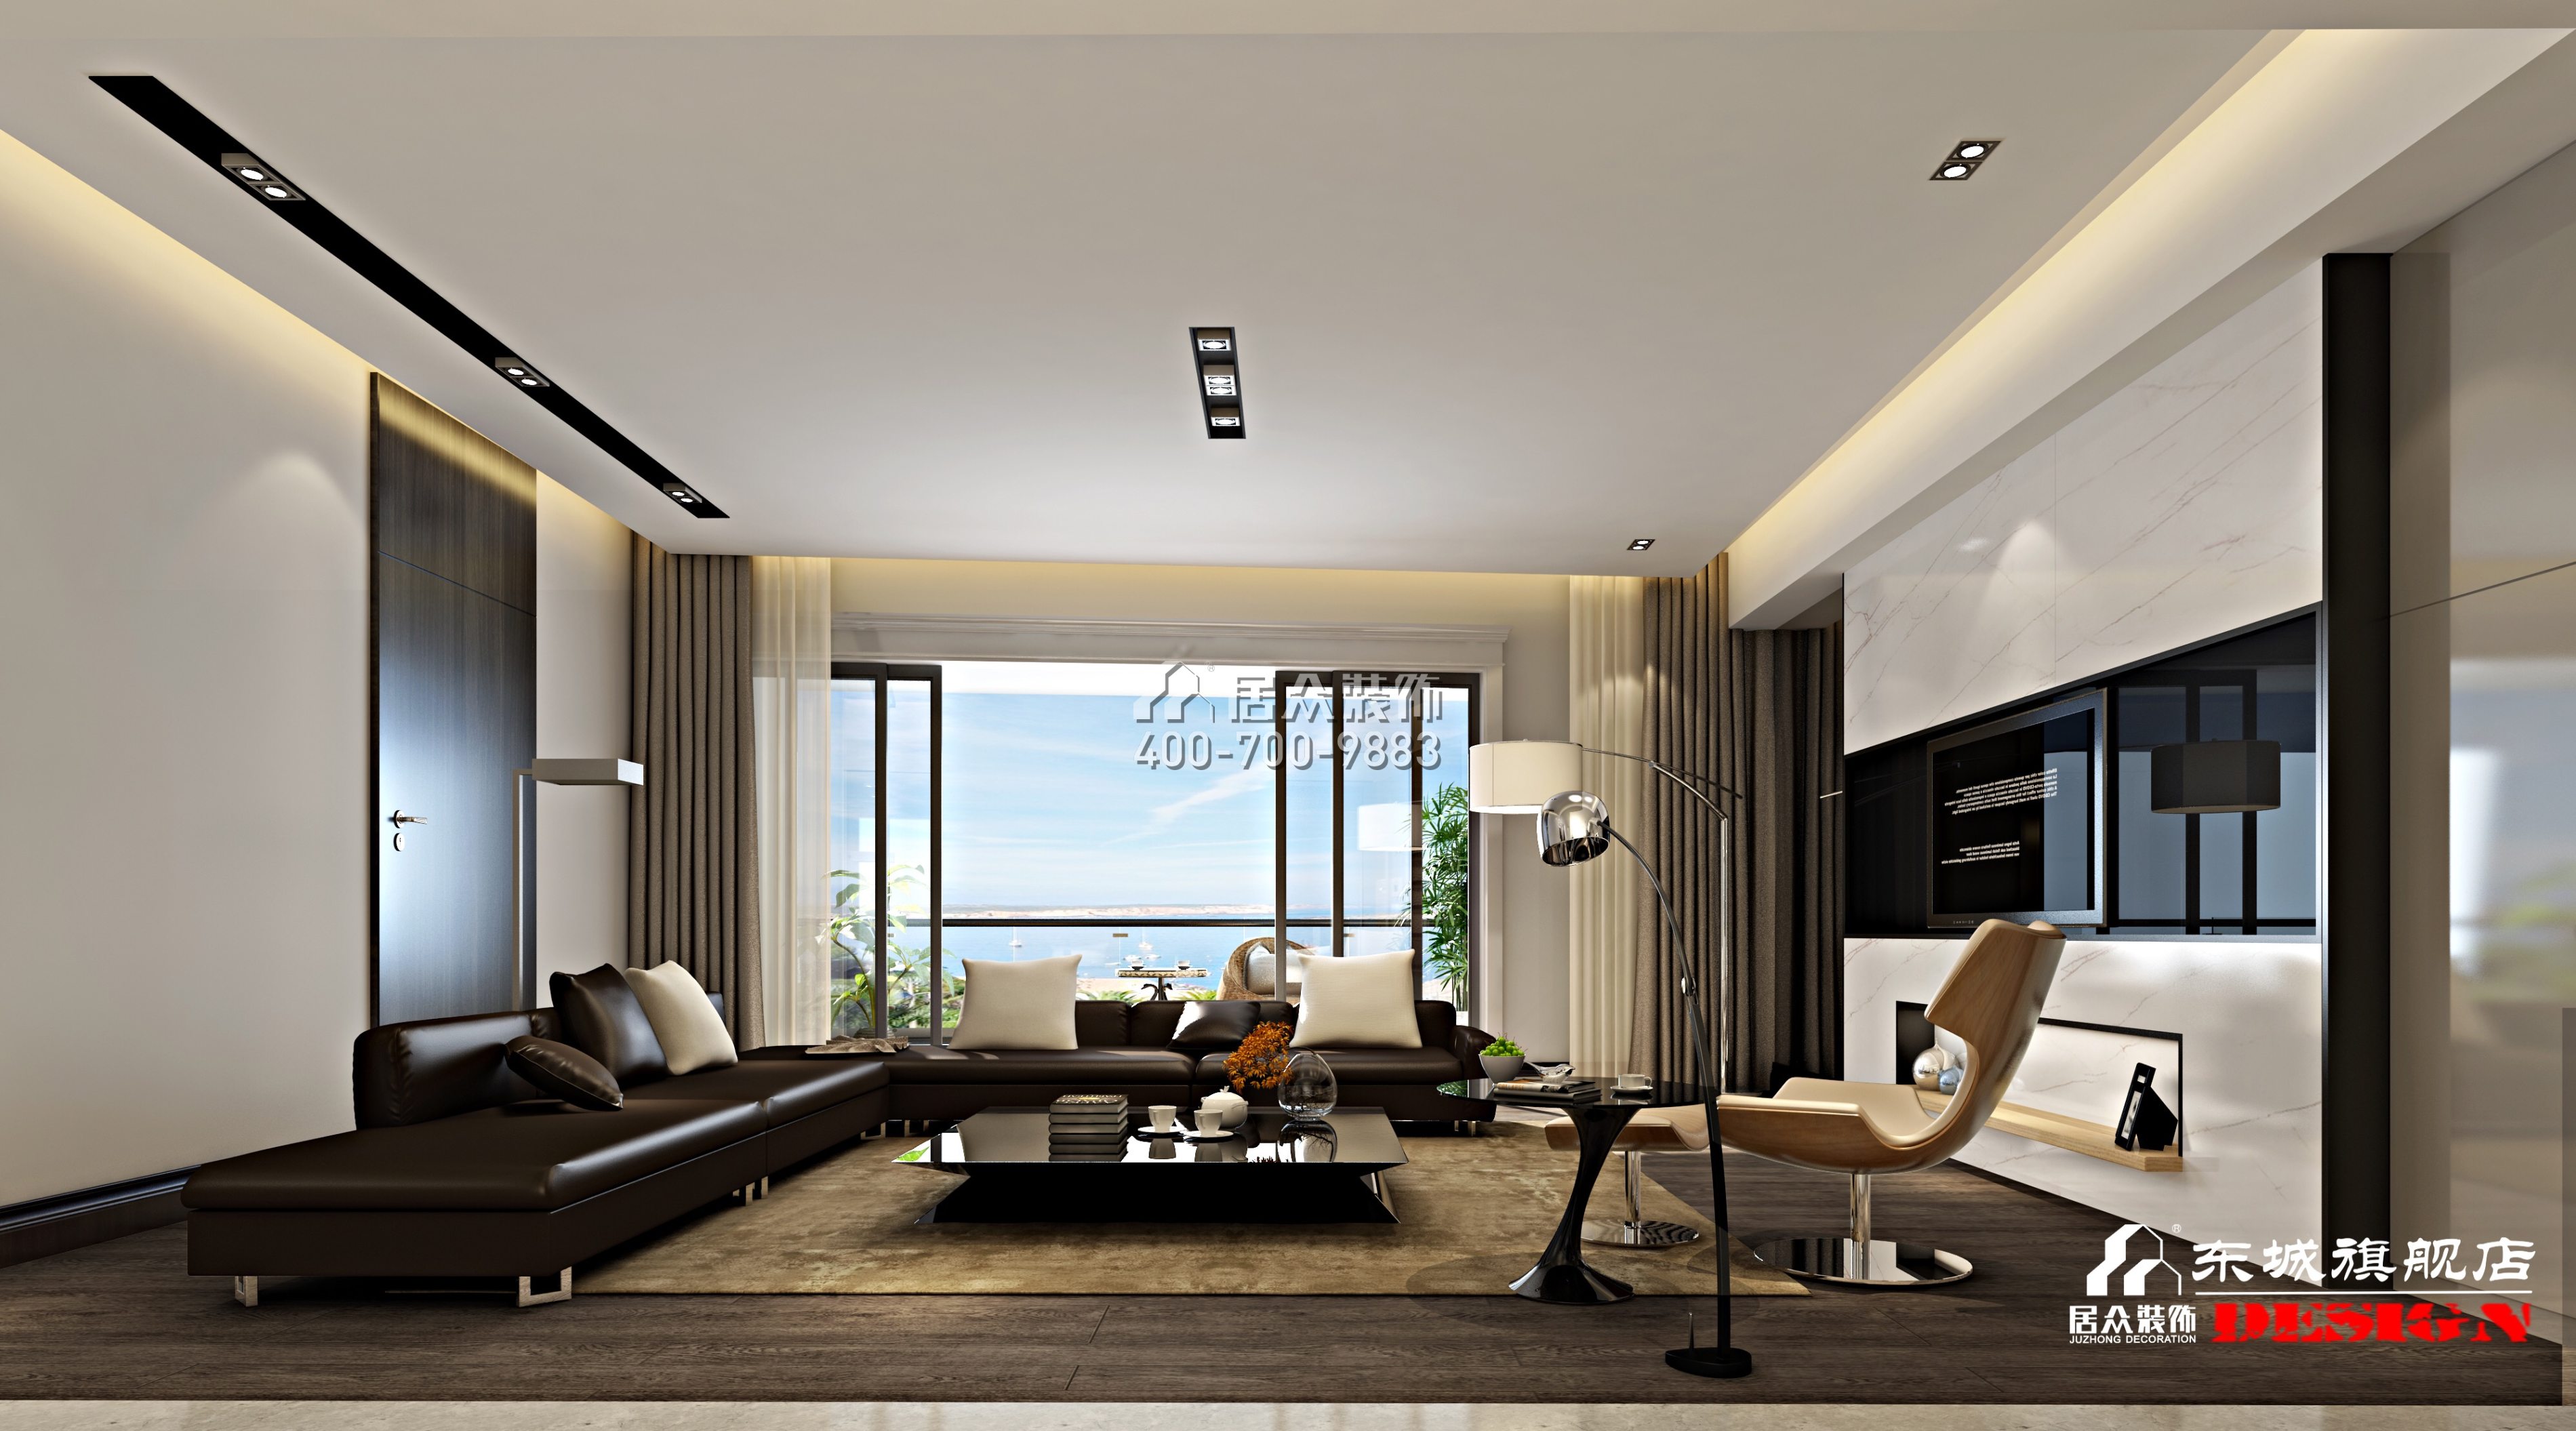 北辰定江洋180平方米现代简约风格平层户型客厅装修效果图